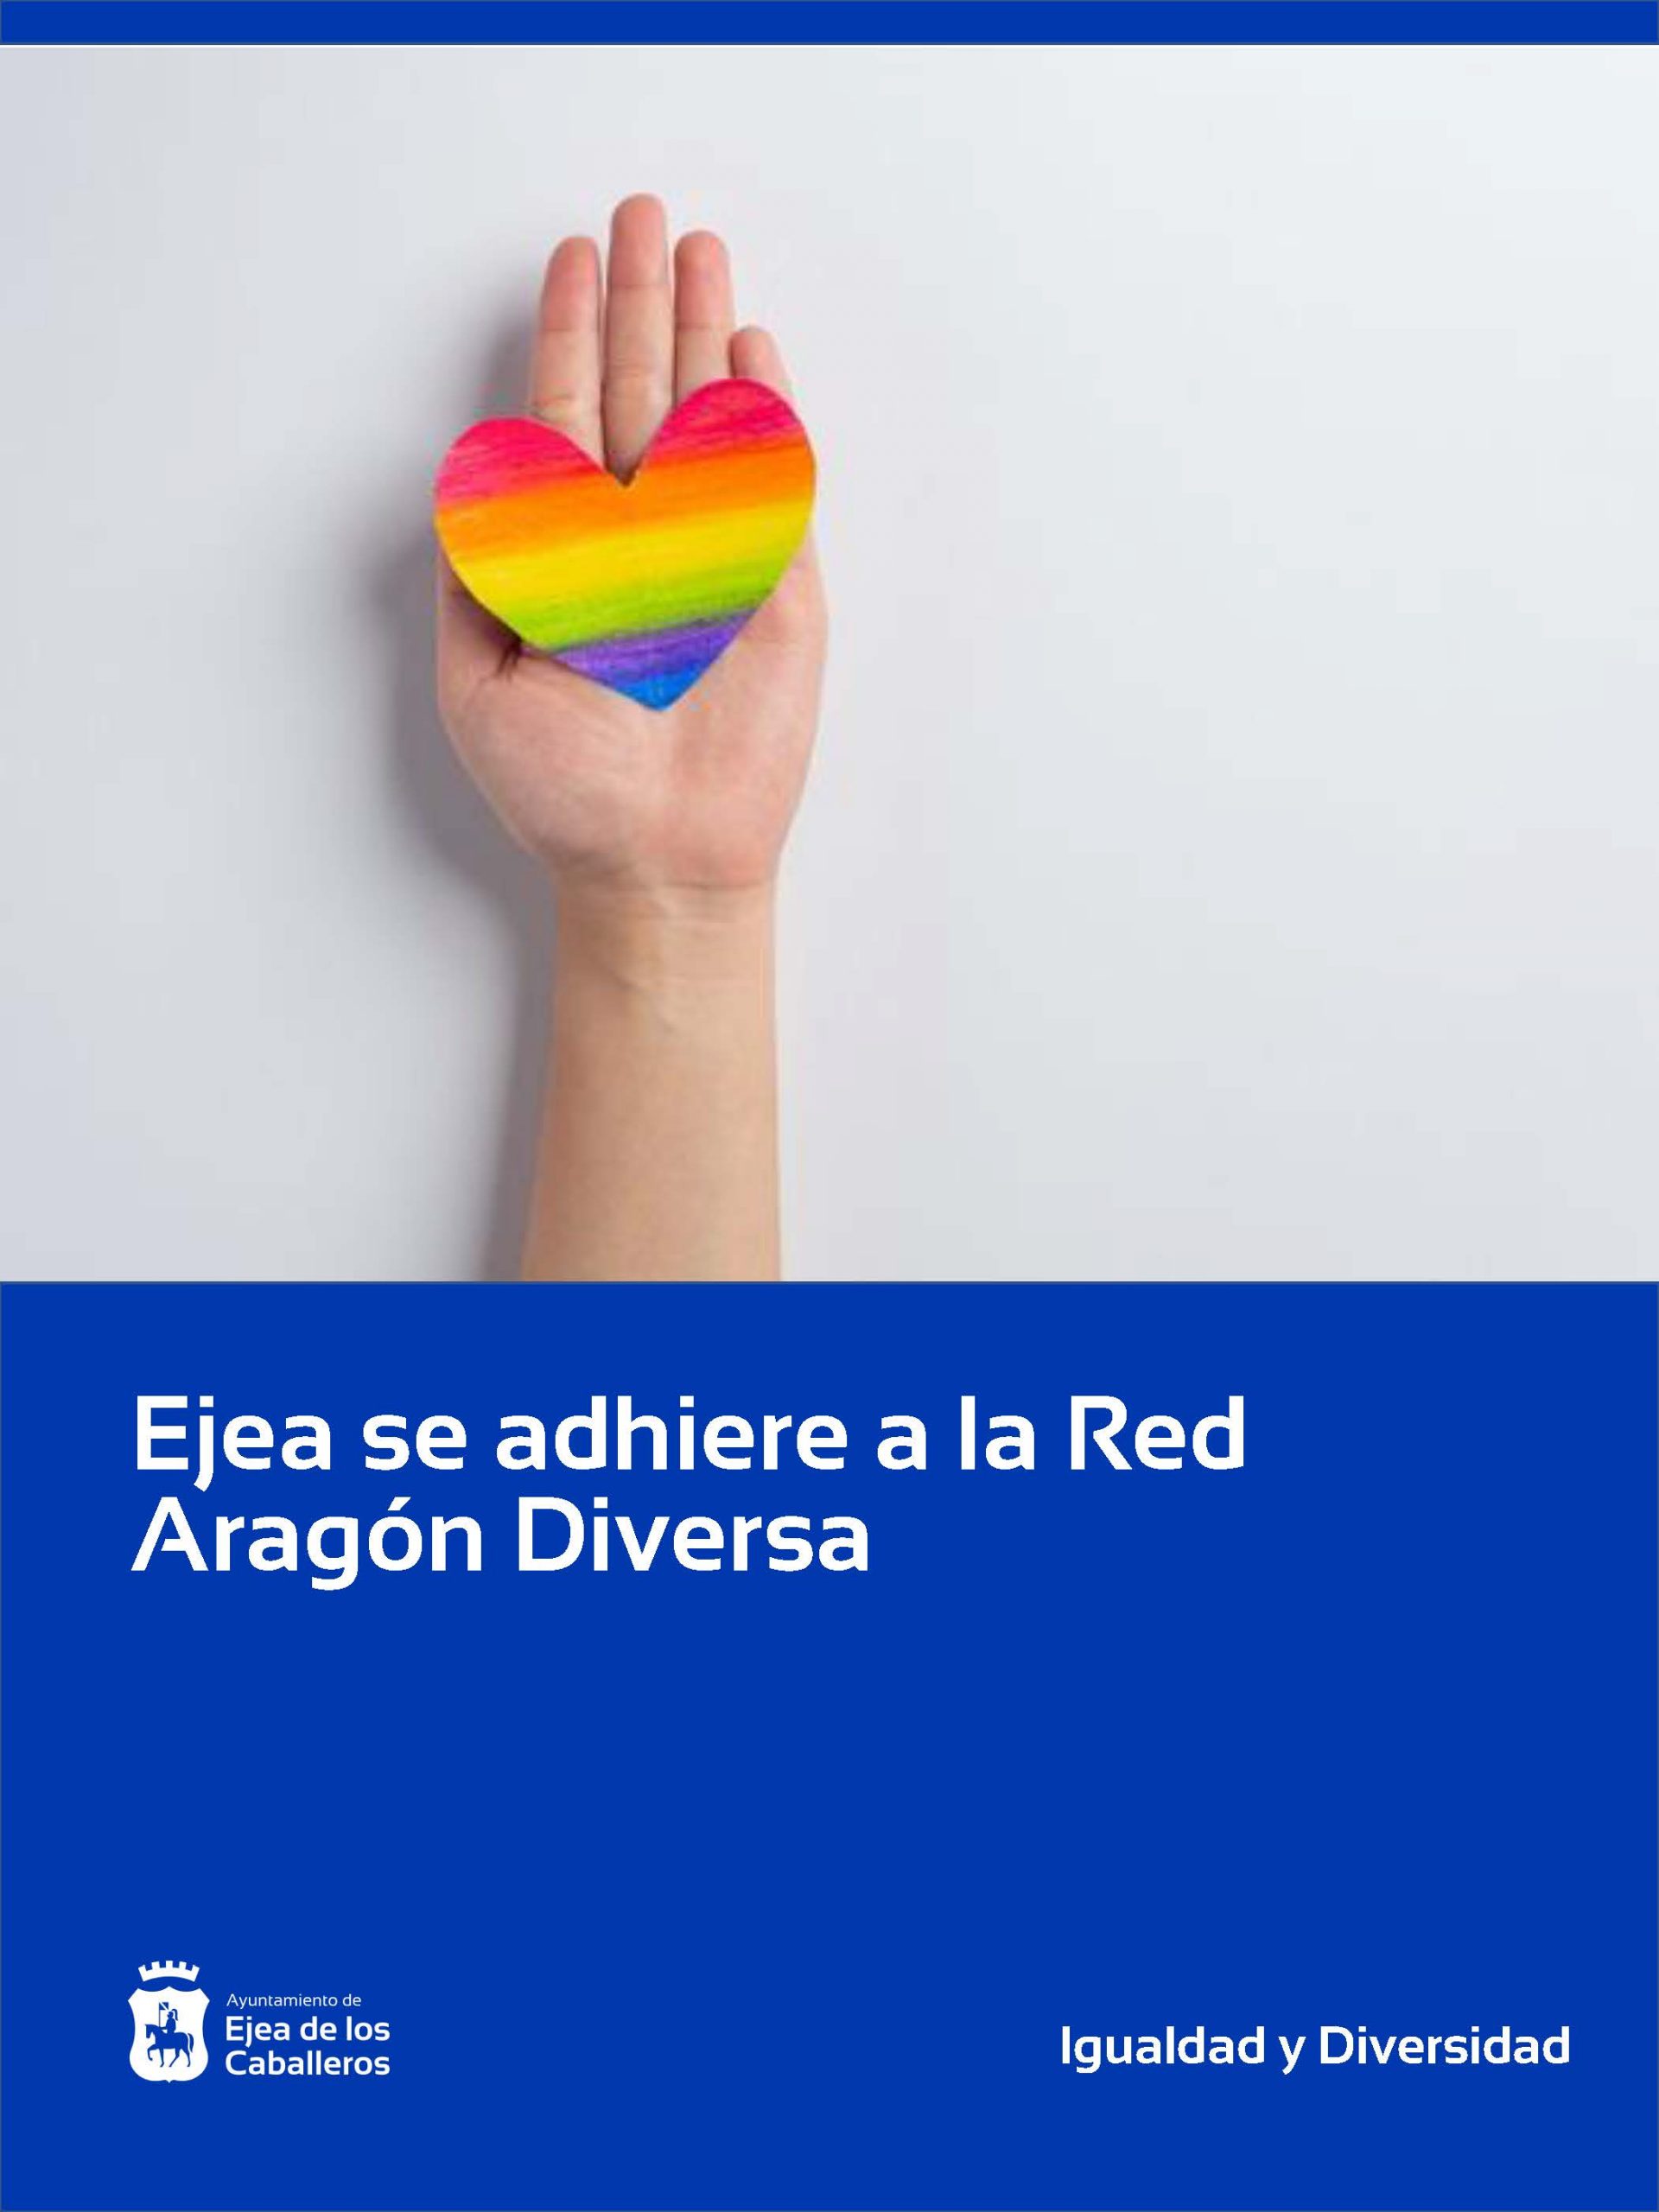 En este momento estás viendo El Ayuntamiento de Ejea se adhiere a la Red Aragón Diversa